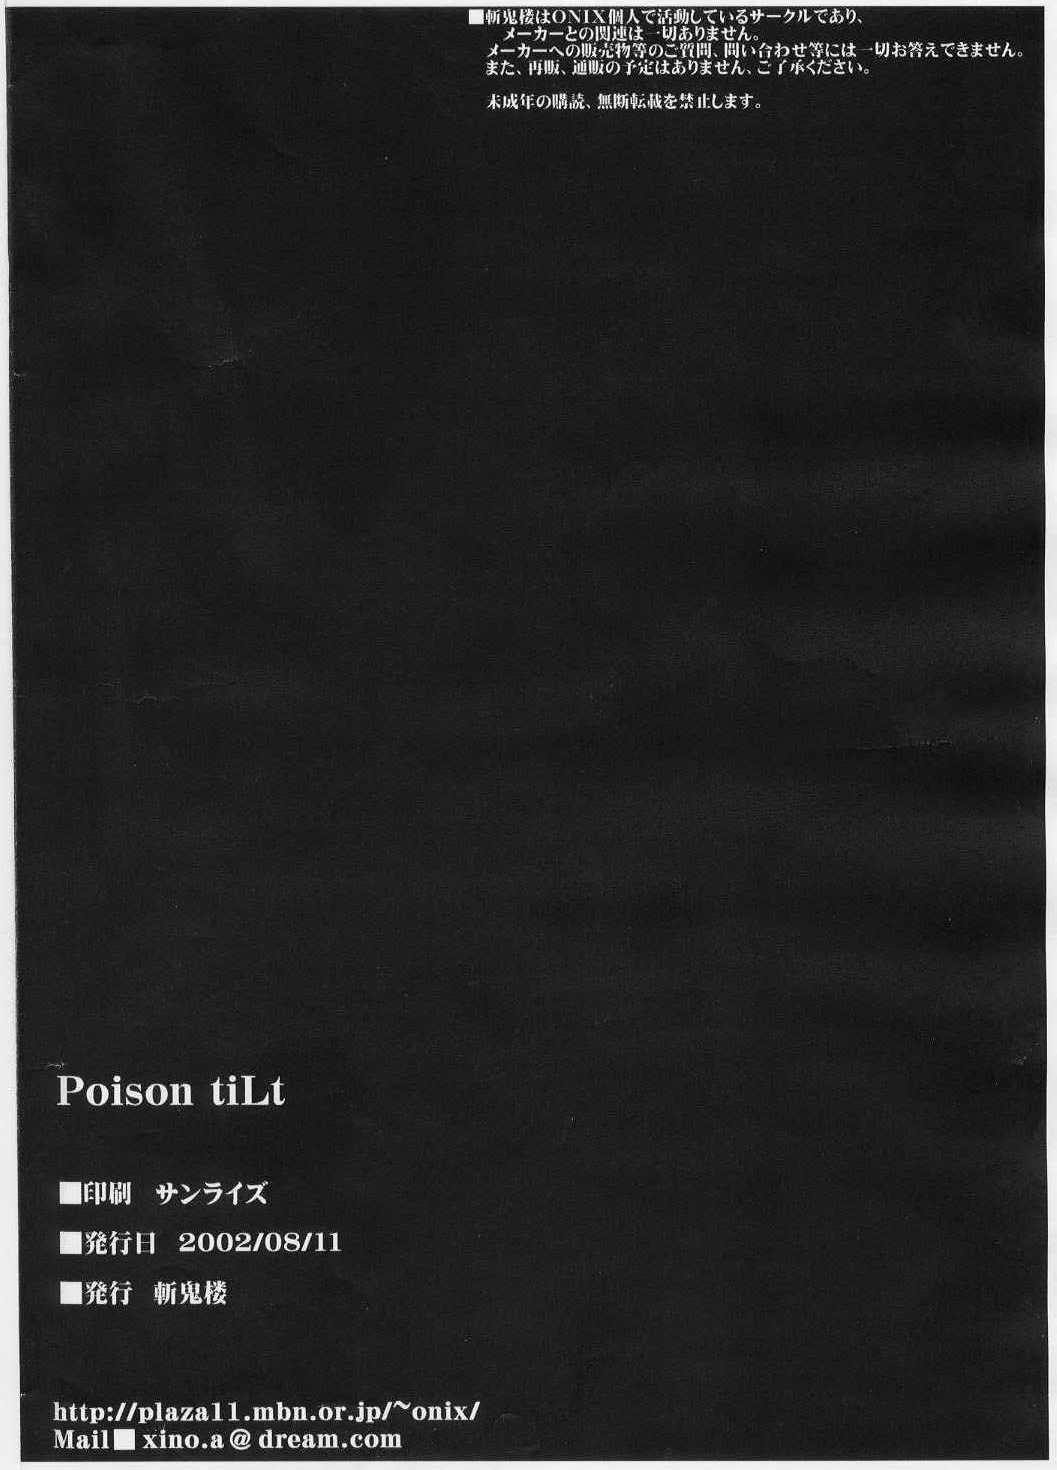 Poison tiLt 20